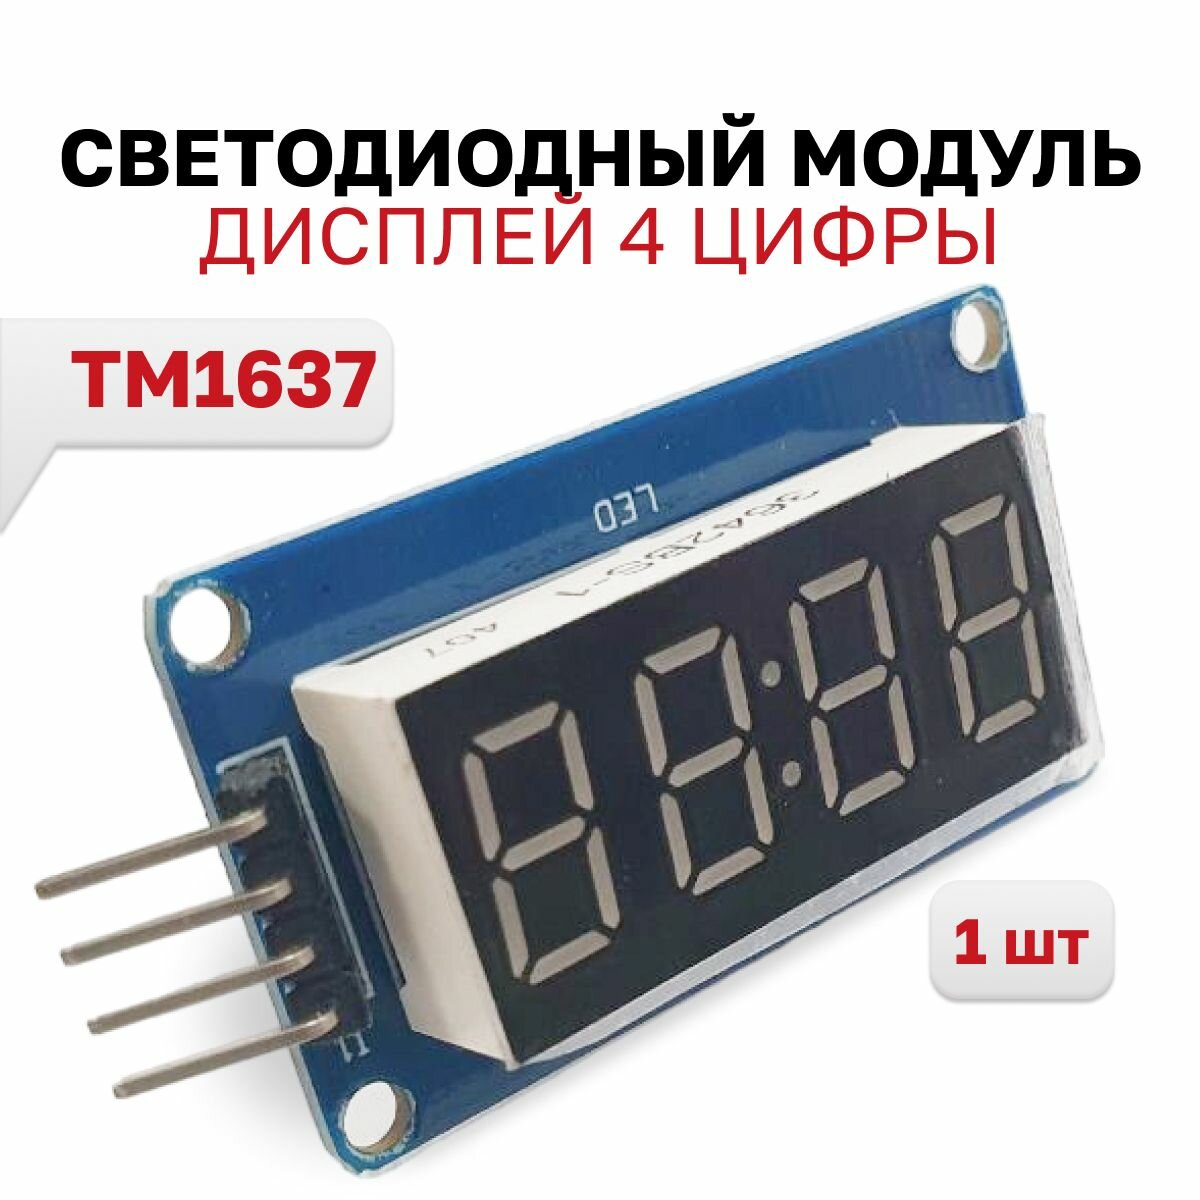 SCR205, светодиодный модуль дисплей 4 цифры (часы) на драйвер чипе TM1637, 1 шт.